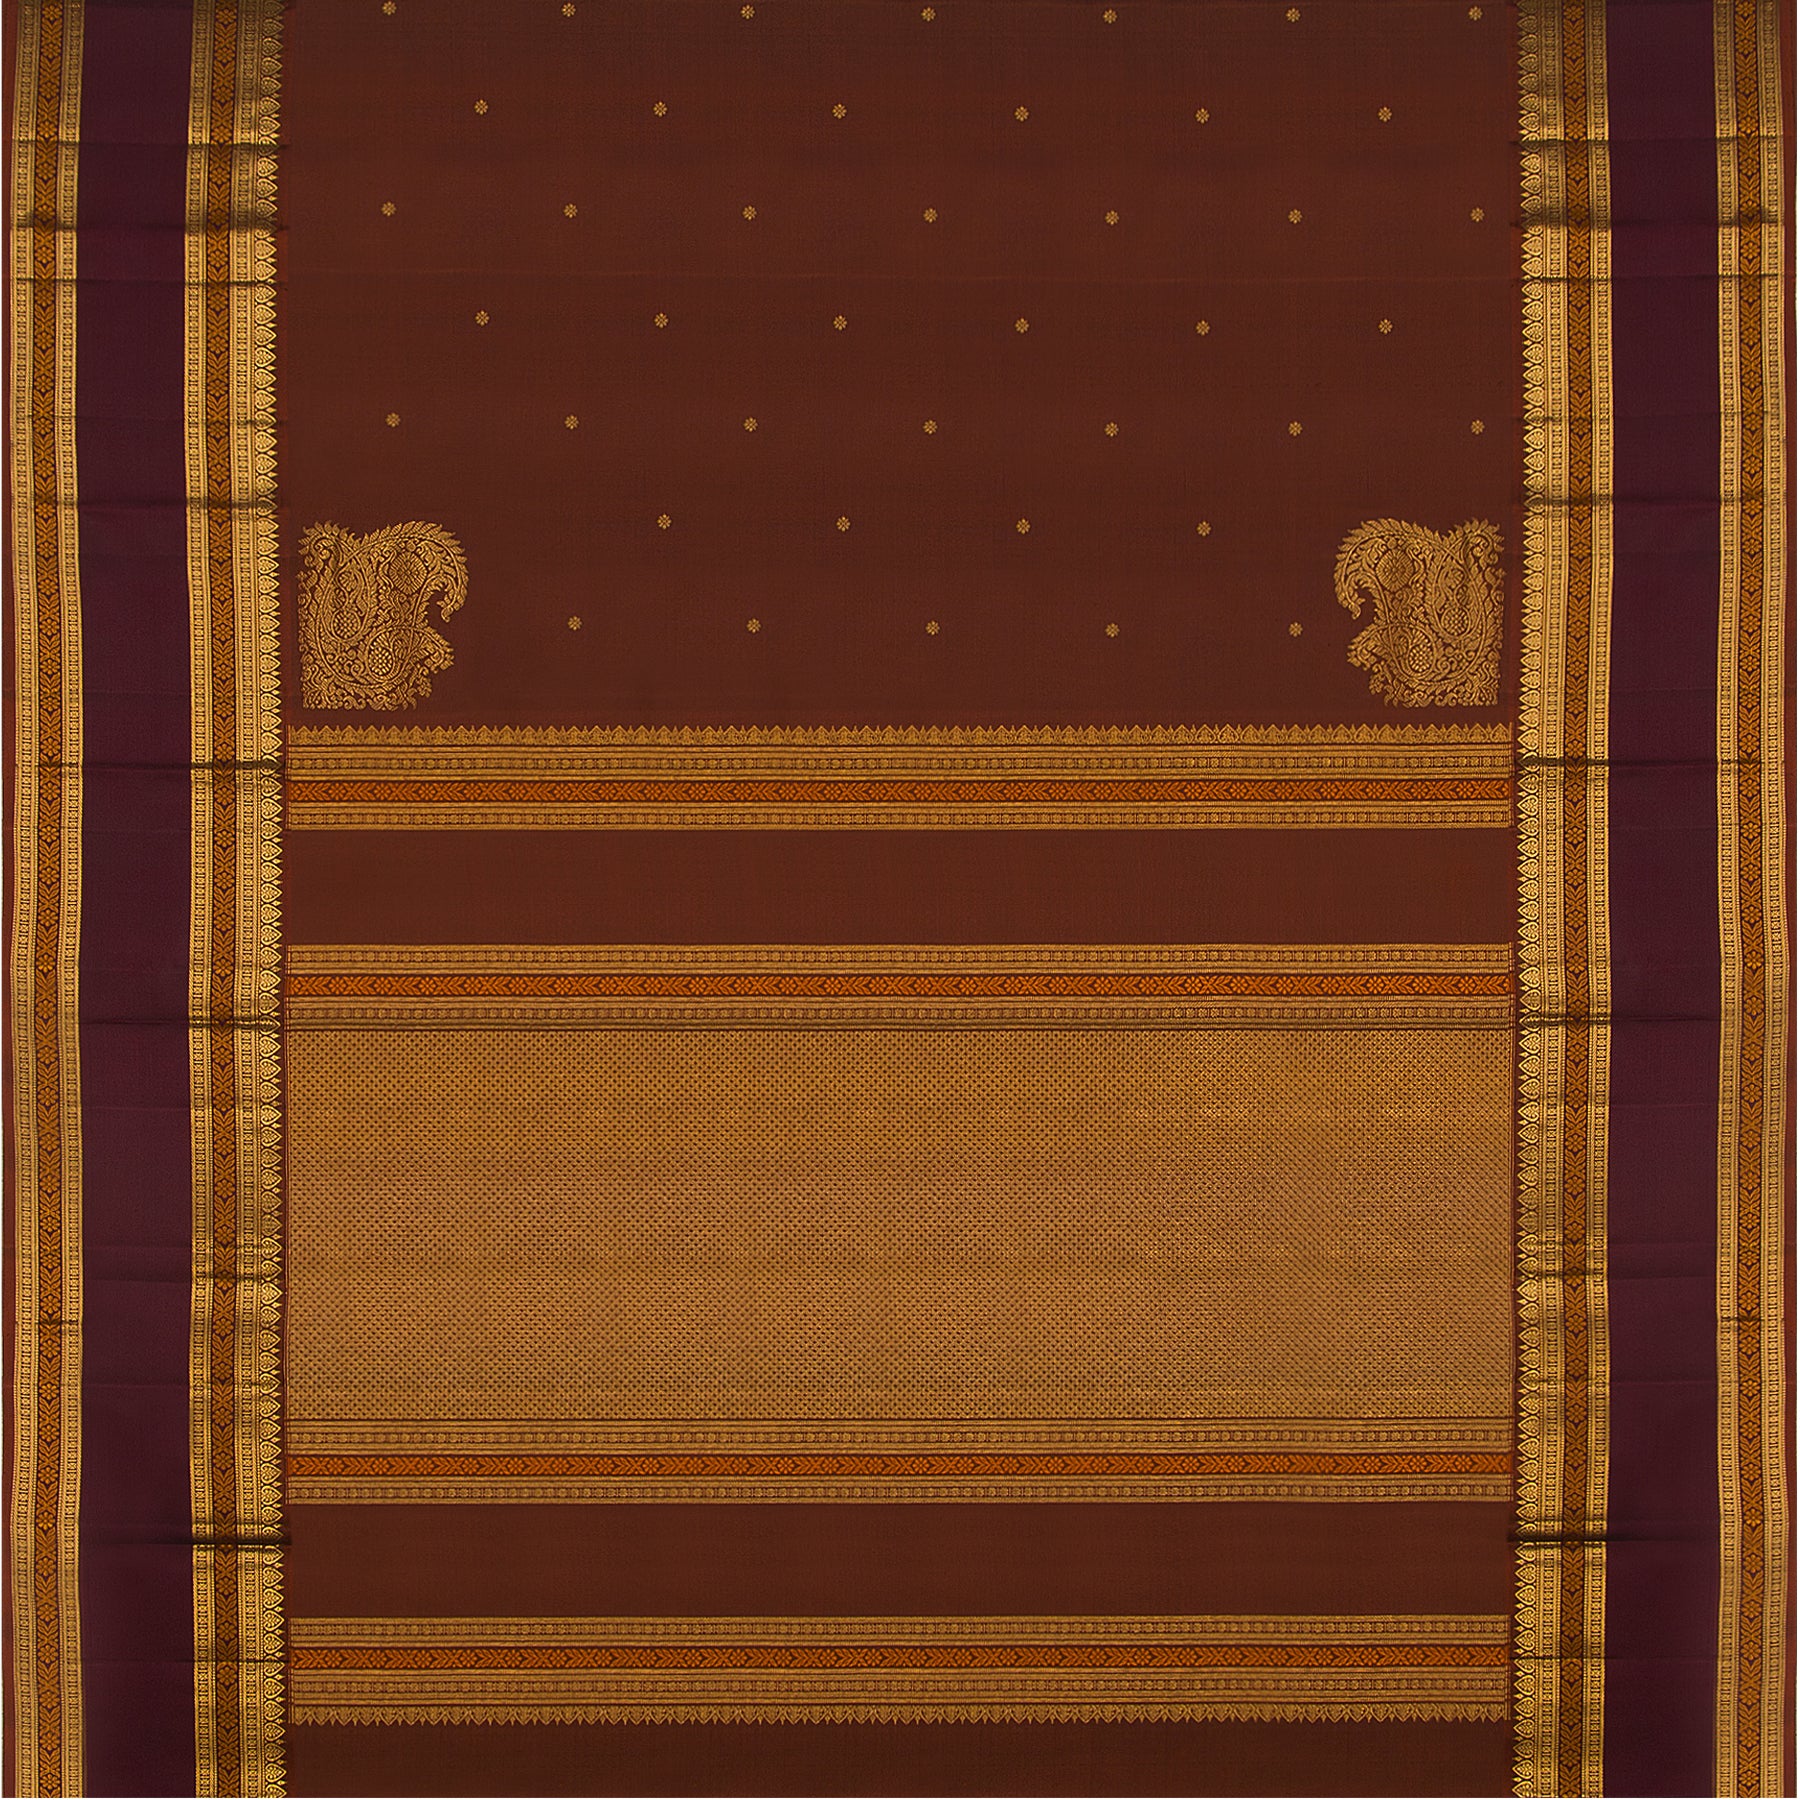 Kanakavalli Kanjivaram Silk Sari 23-600-HS001-03478 - Full View